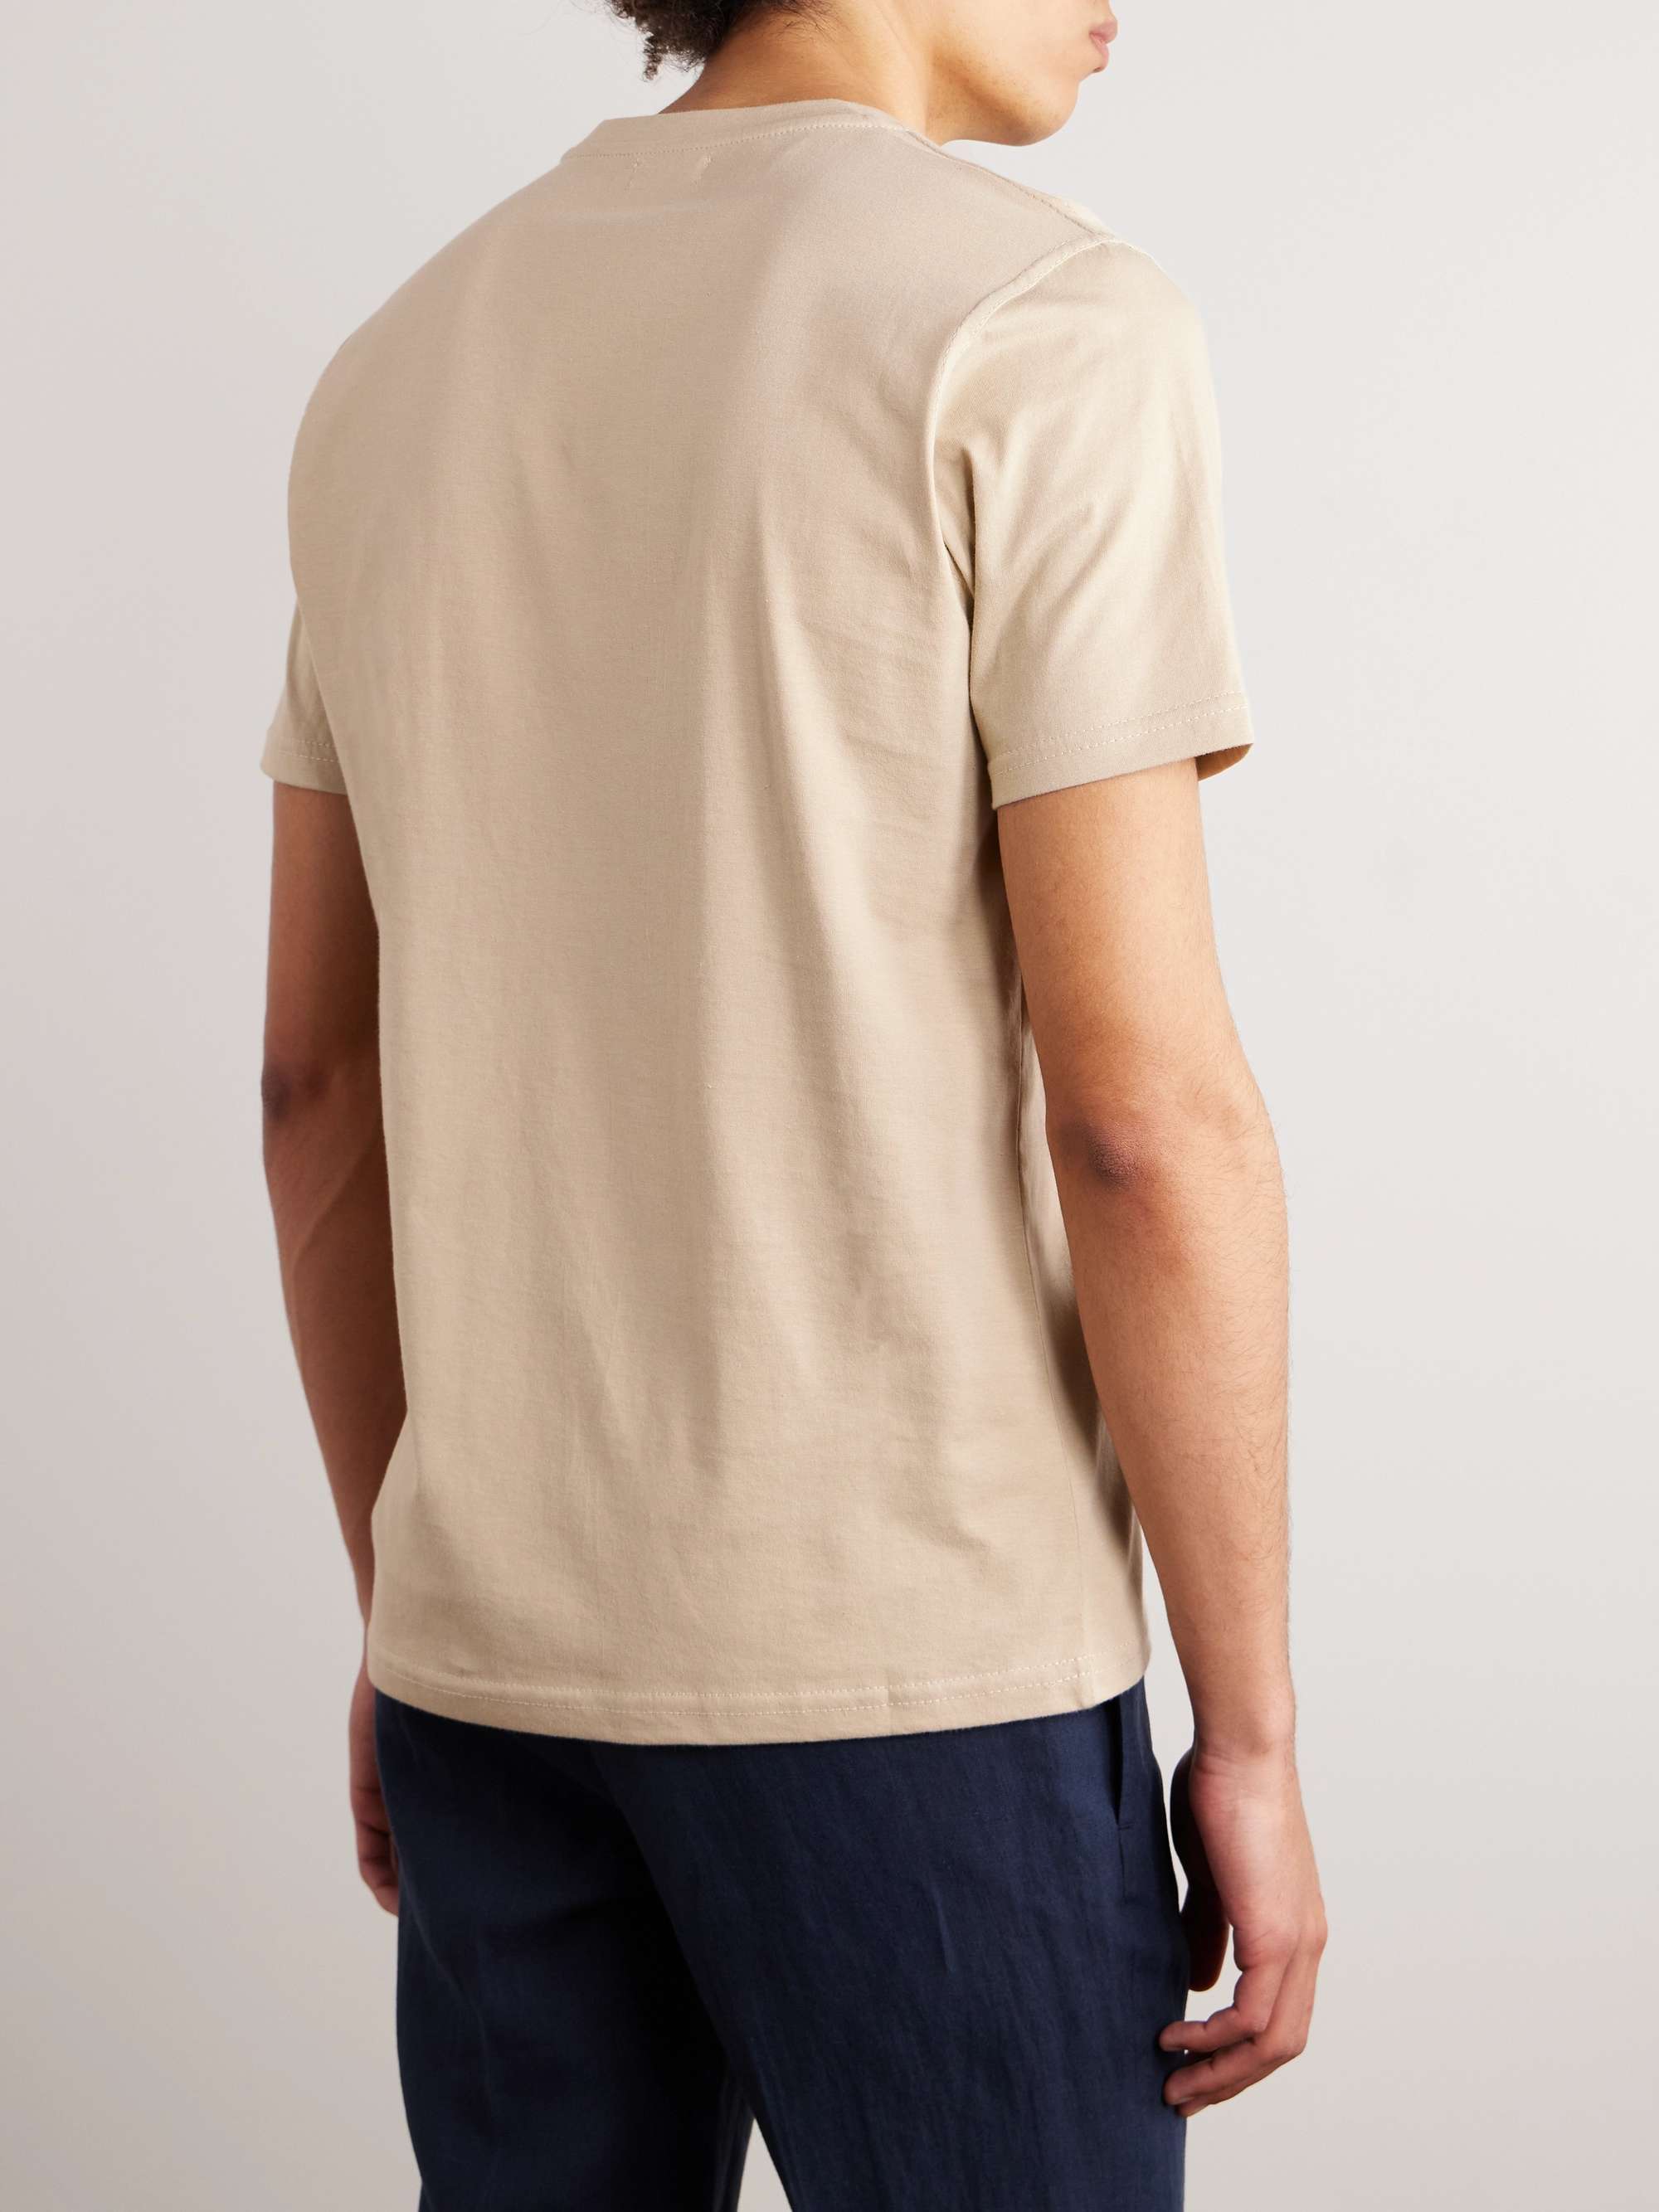 DE PETRILLO Cotton-Jersey T-Shirt